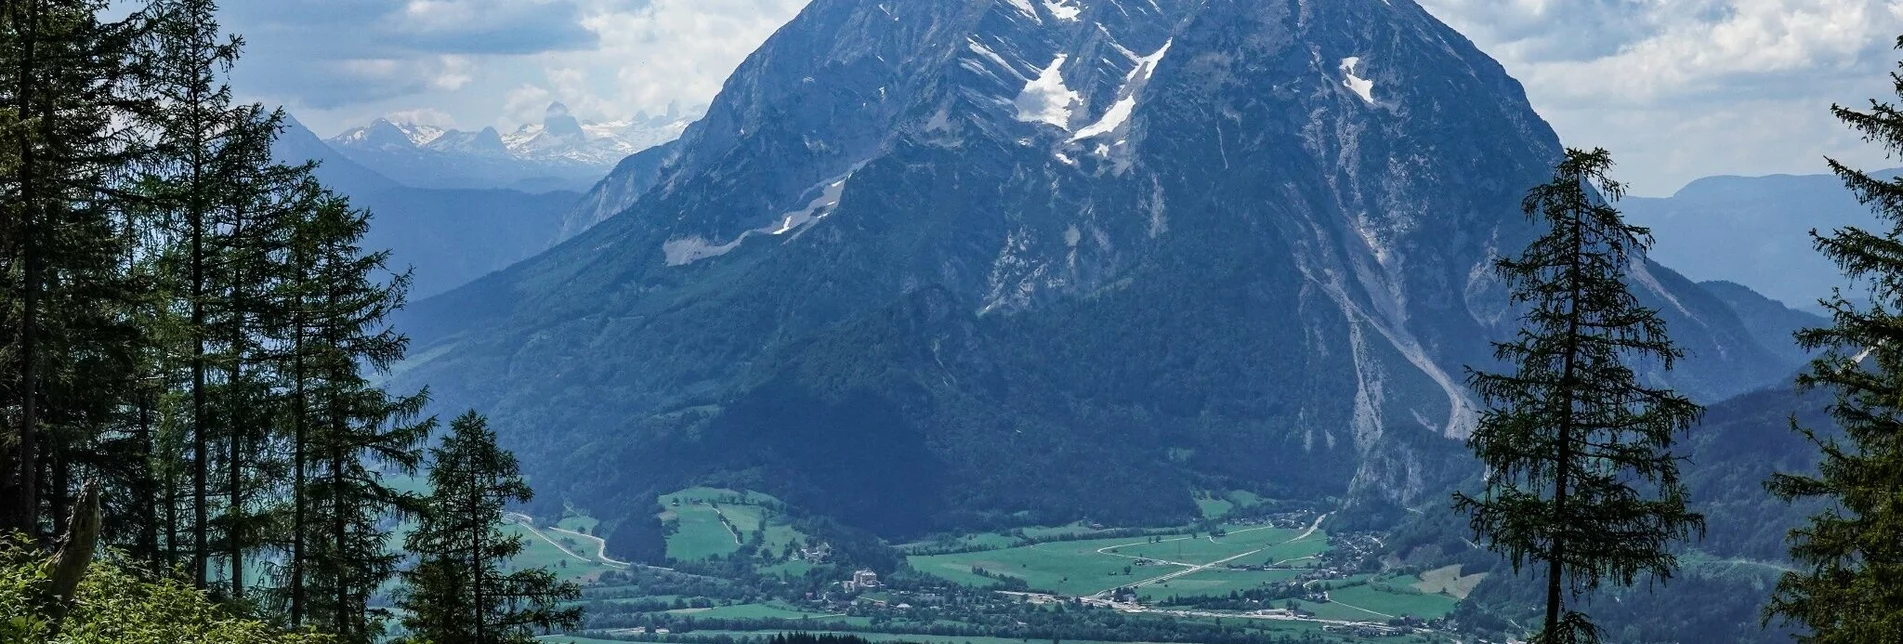 Trailrunning Kohlanger Trail - Touren-Impression #1 | © Erlebnisregion Schladming-Dachstein